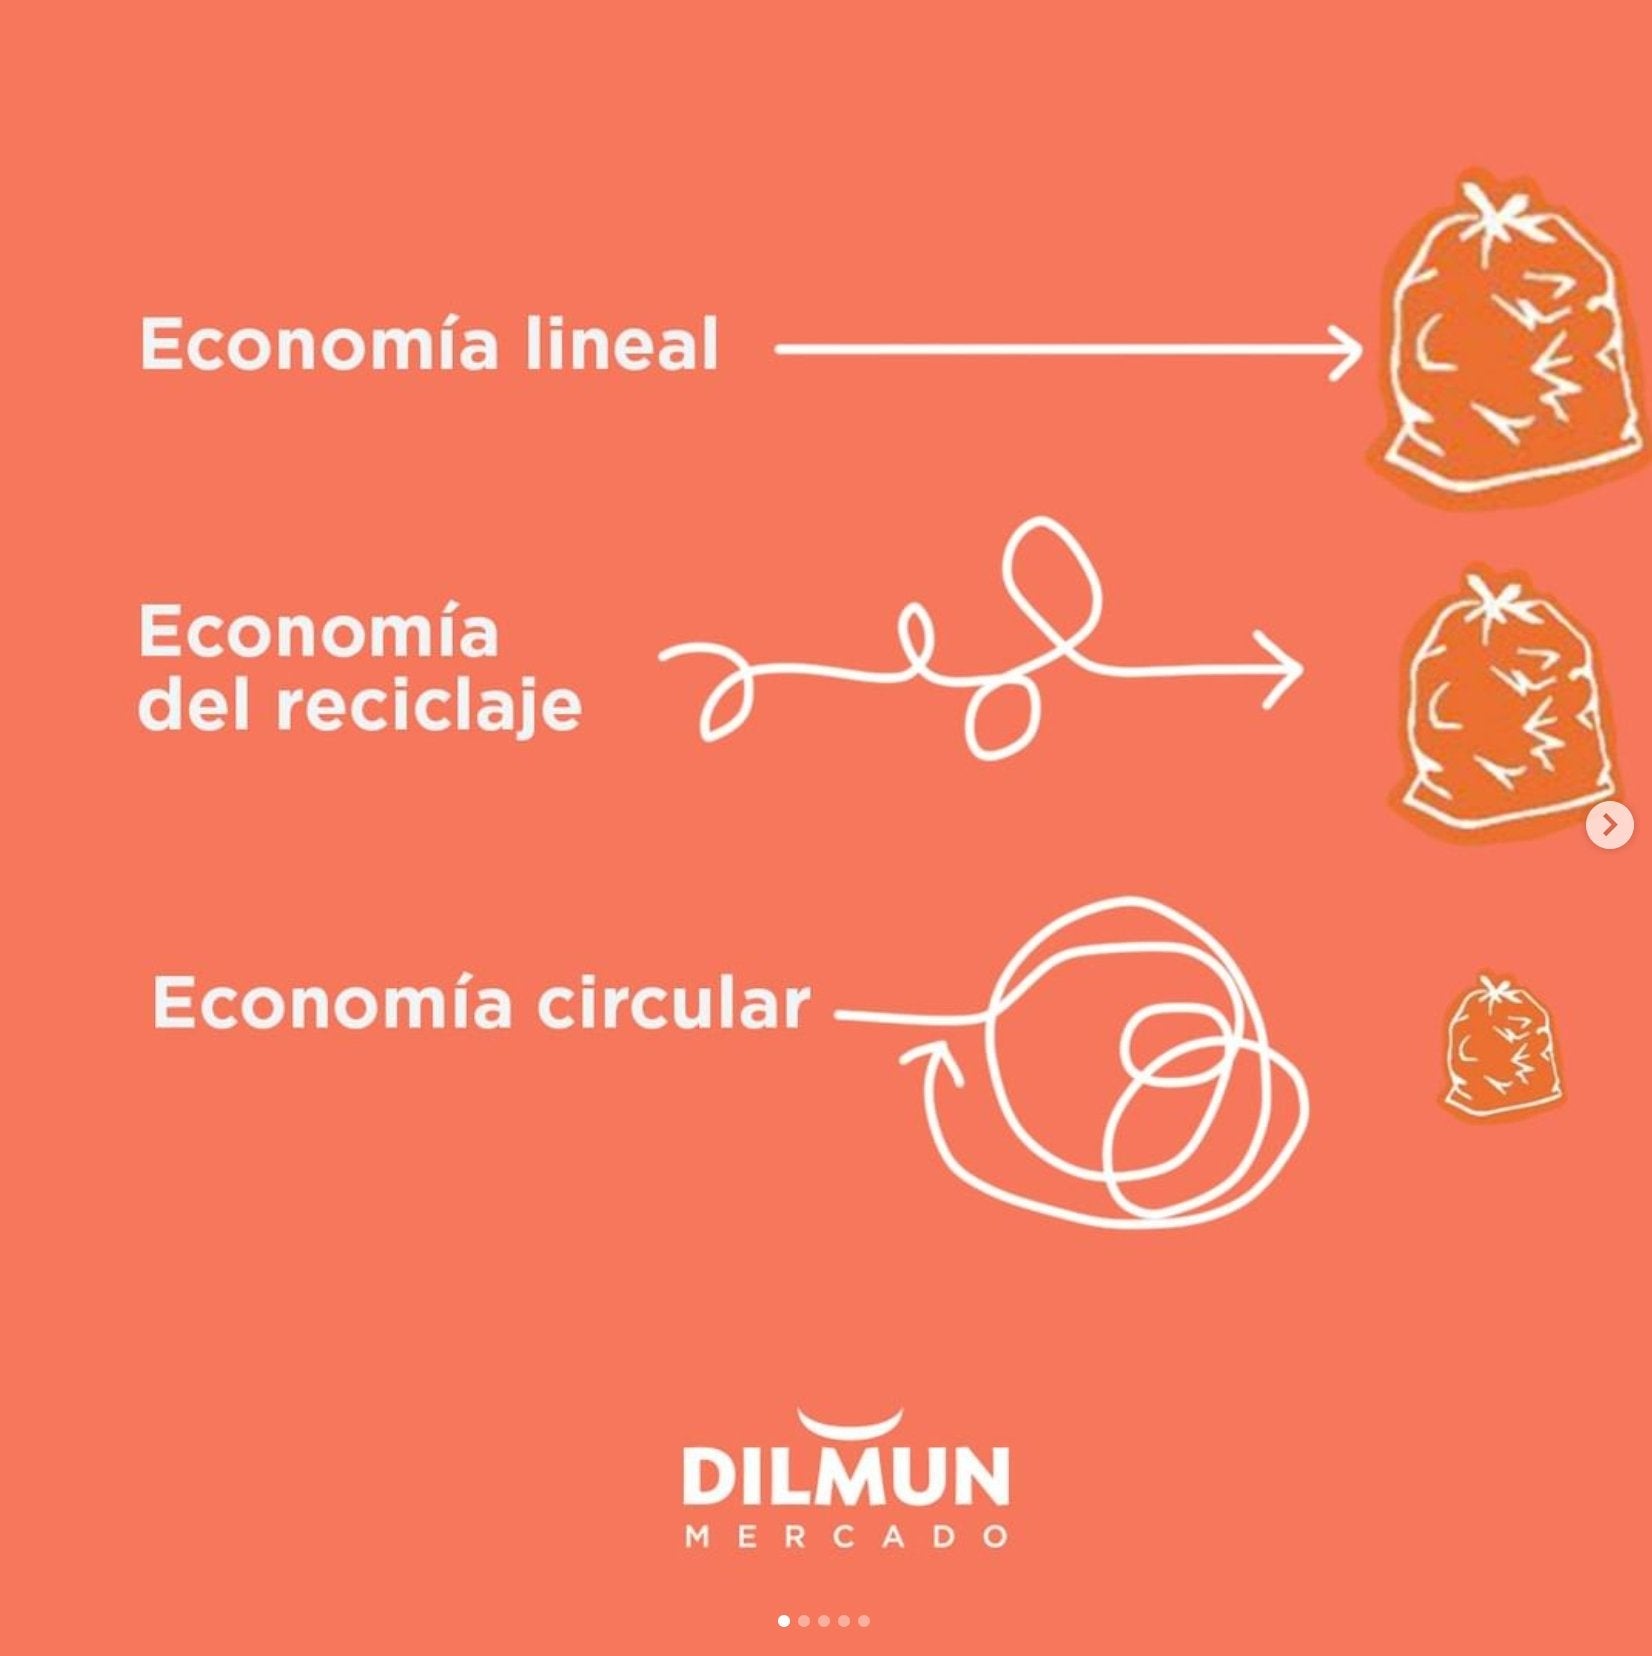 ¿Qué es la Economía circular?